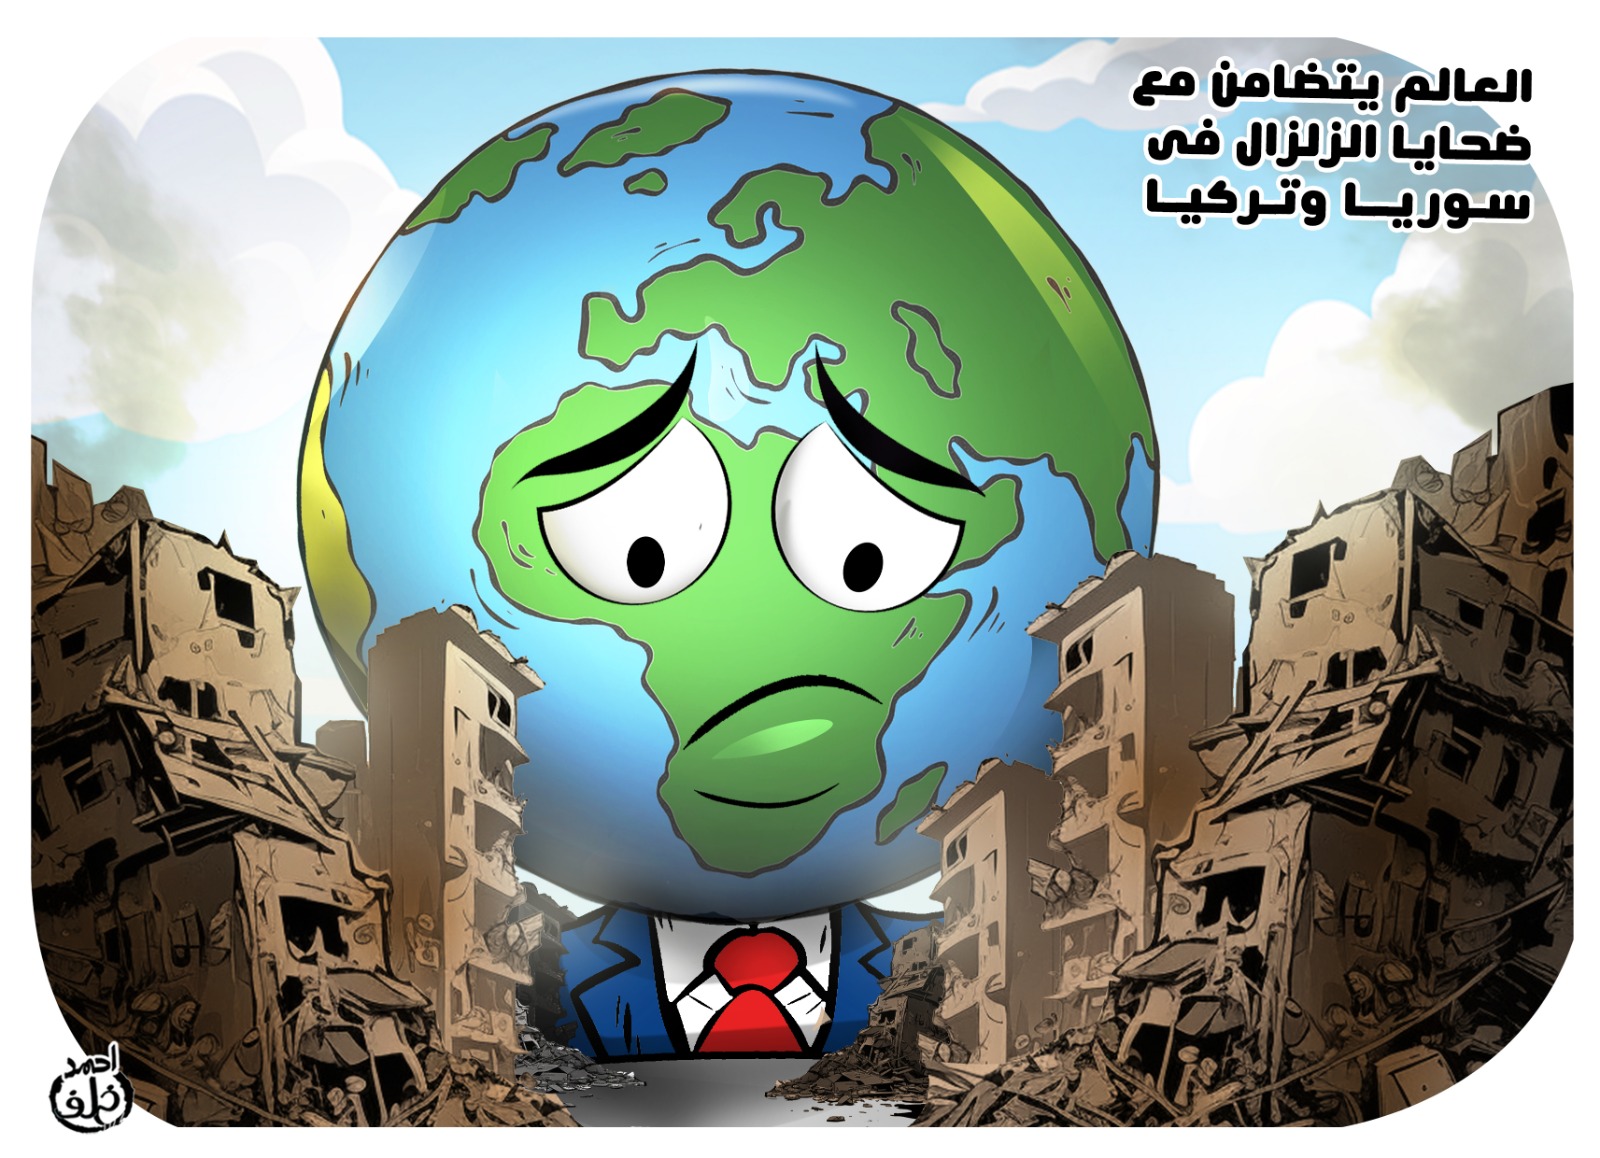 العالم يتضامن مع الشعبين السورى والتركى